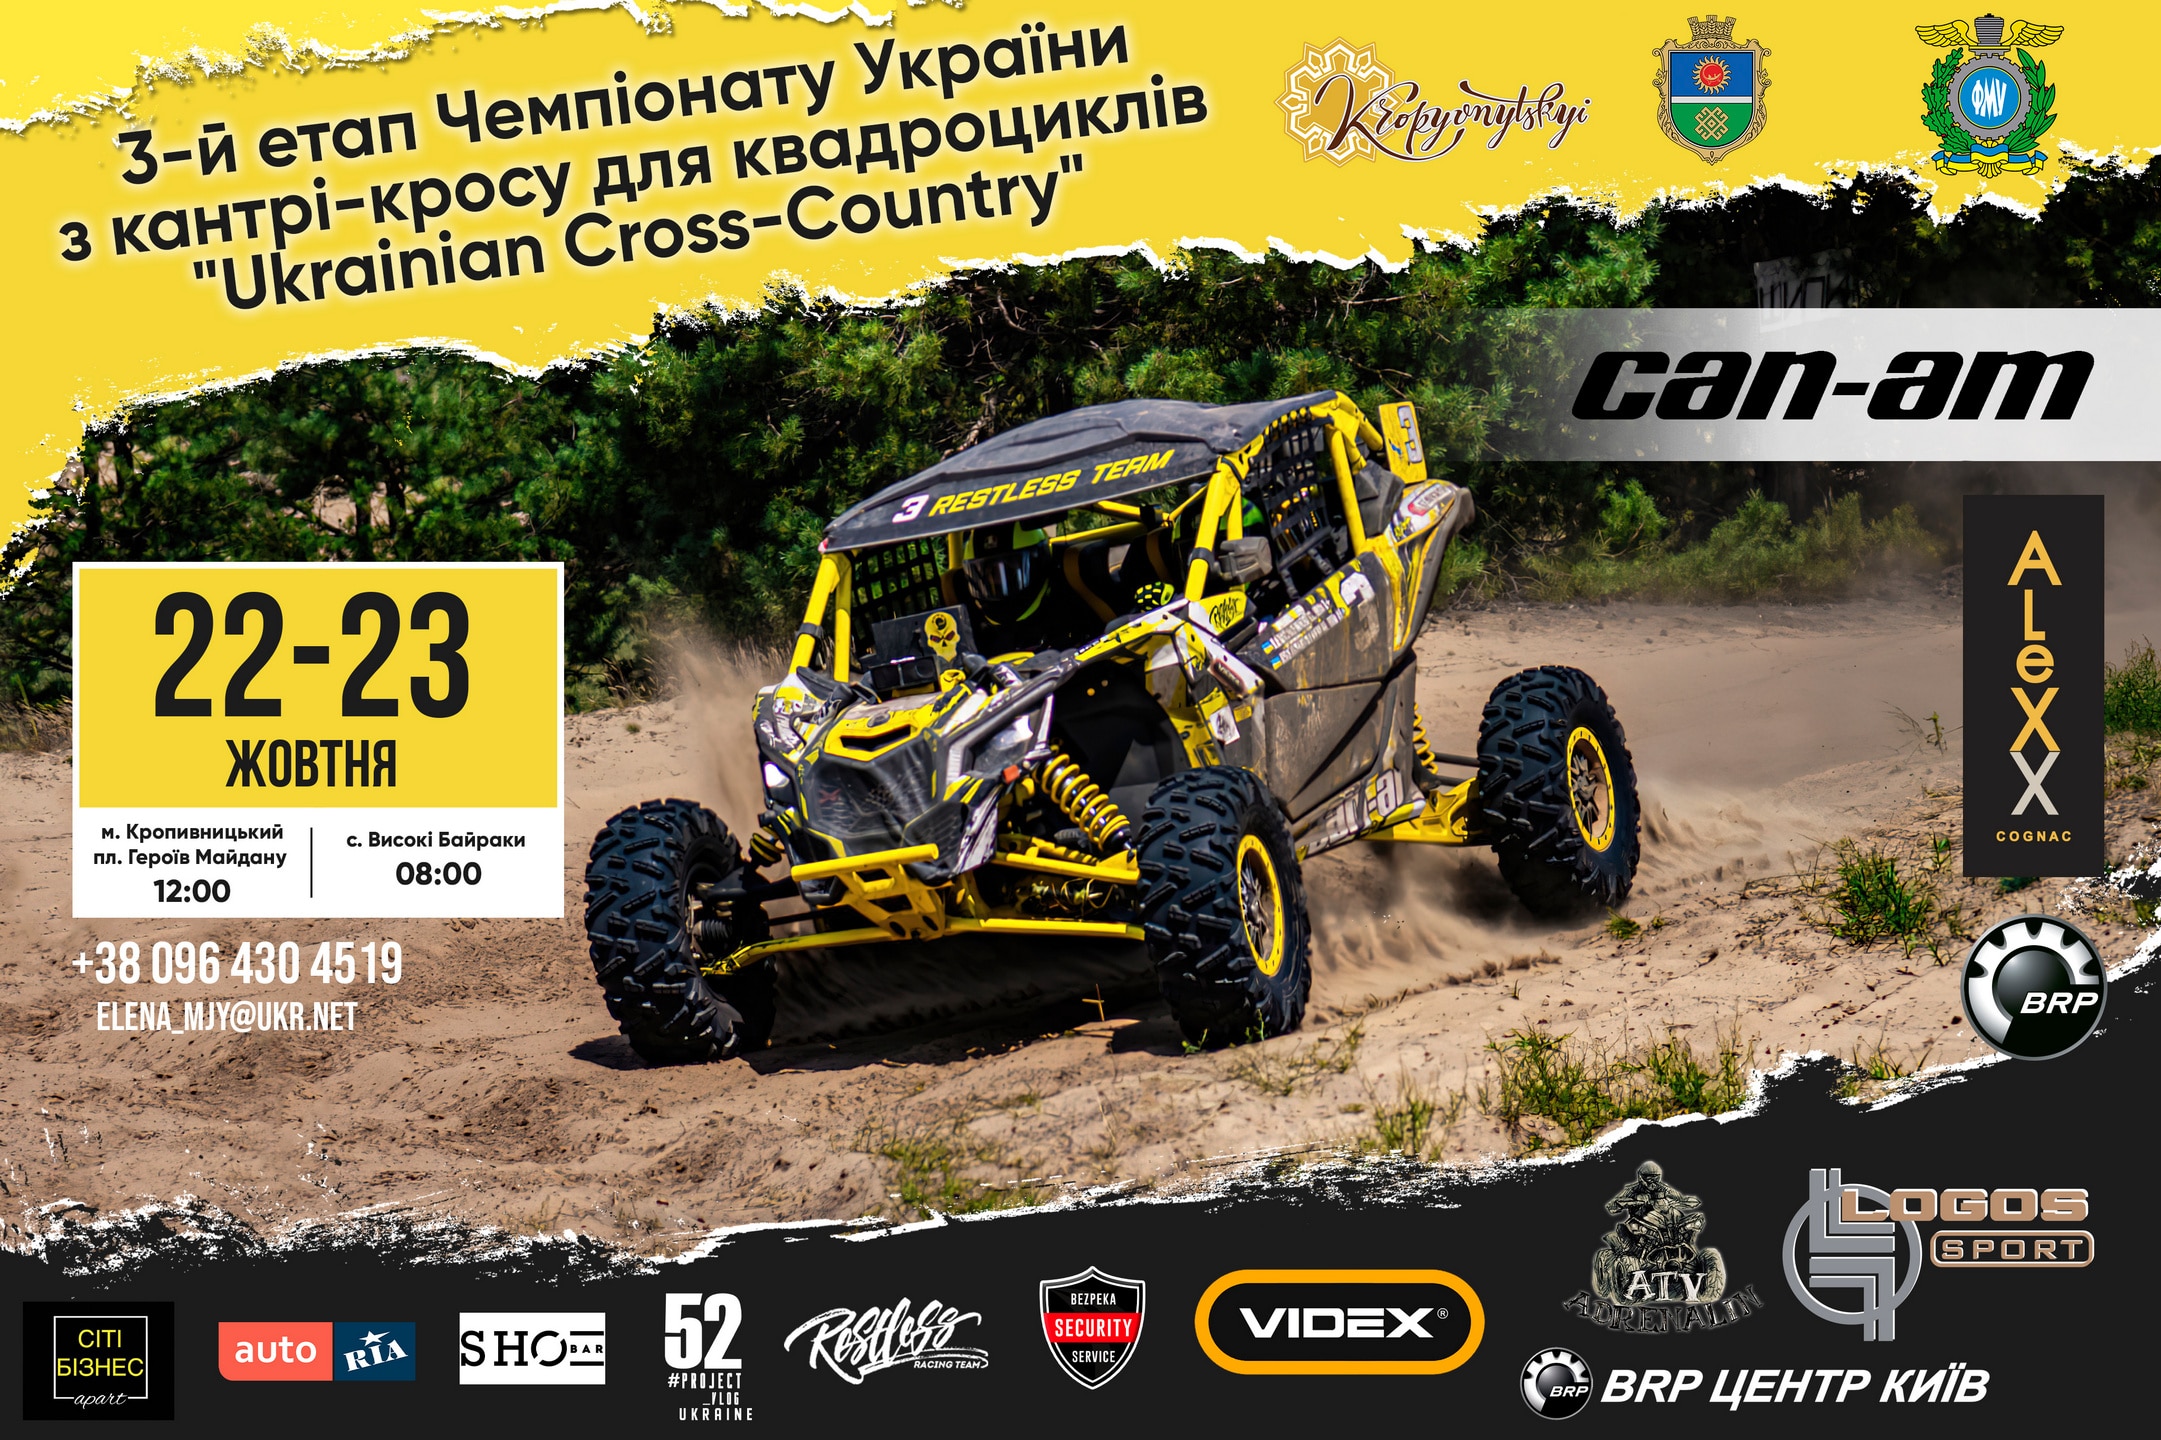 Ukrainian Cross-Country 3-й етап Кіровоградська область